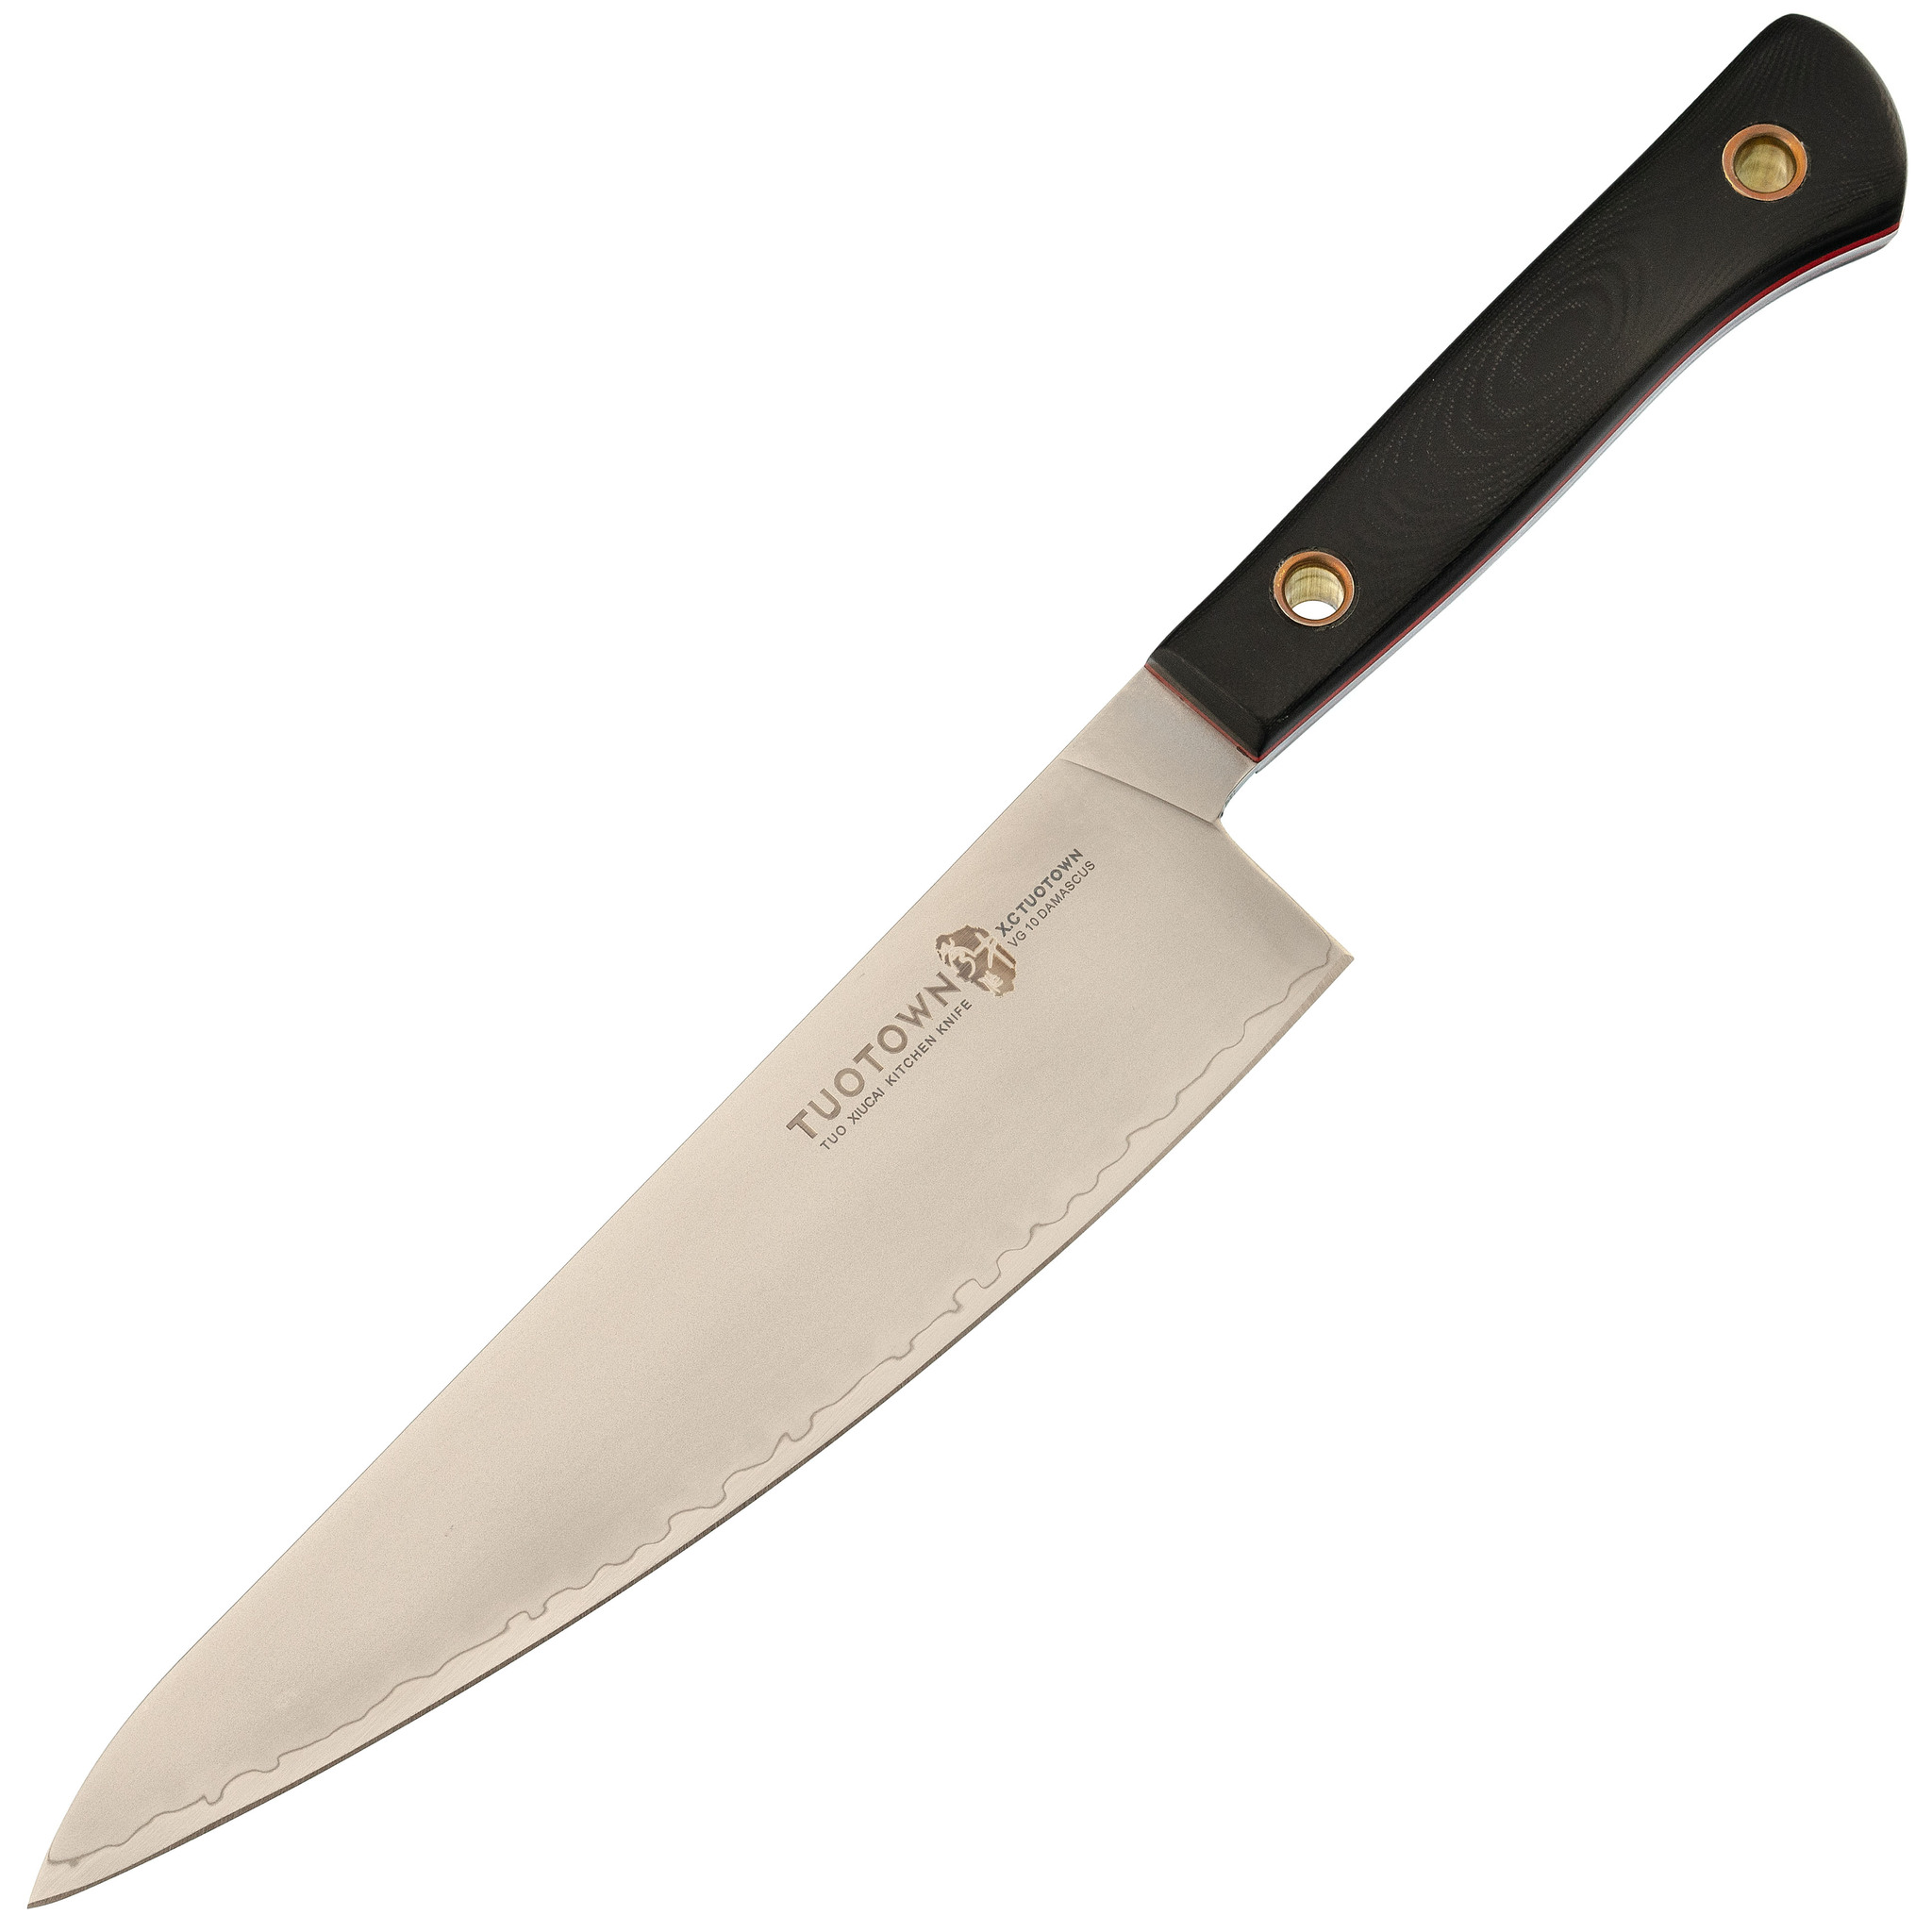 Кухонный нож Шеф большой, сталь VG10, обкладка AUS8, G10